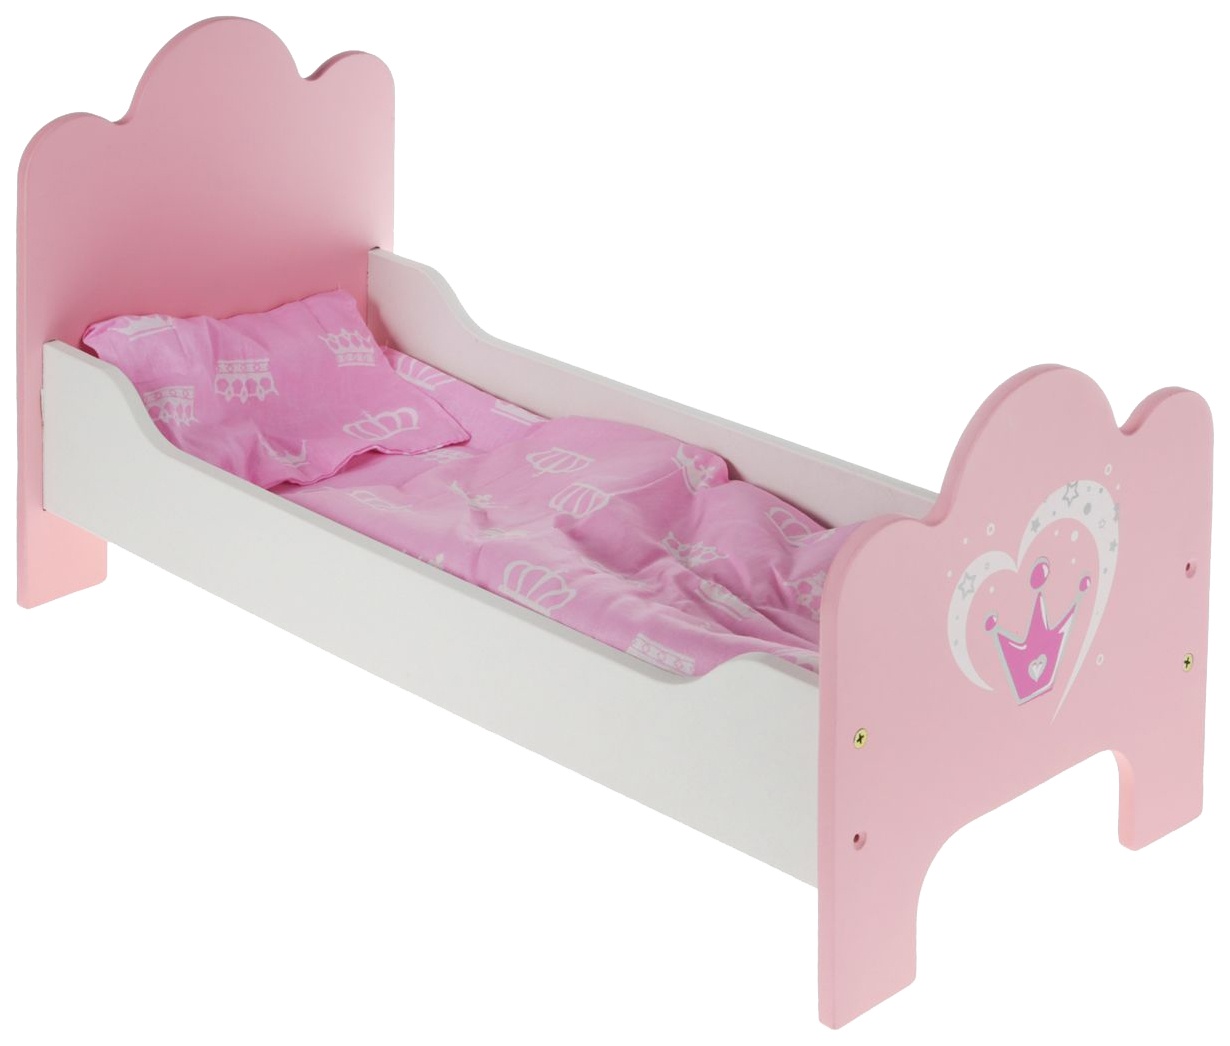 Кроватка деревянная Корона постелька в наборе 67114 для кукол Mary Poppins кукольная кроватка огонек с постельным бельем розовая